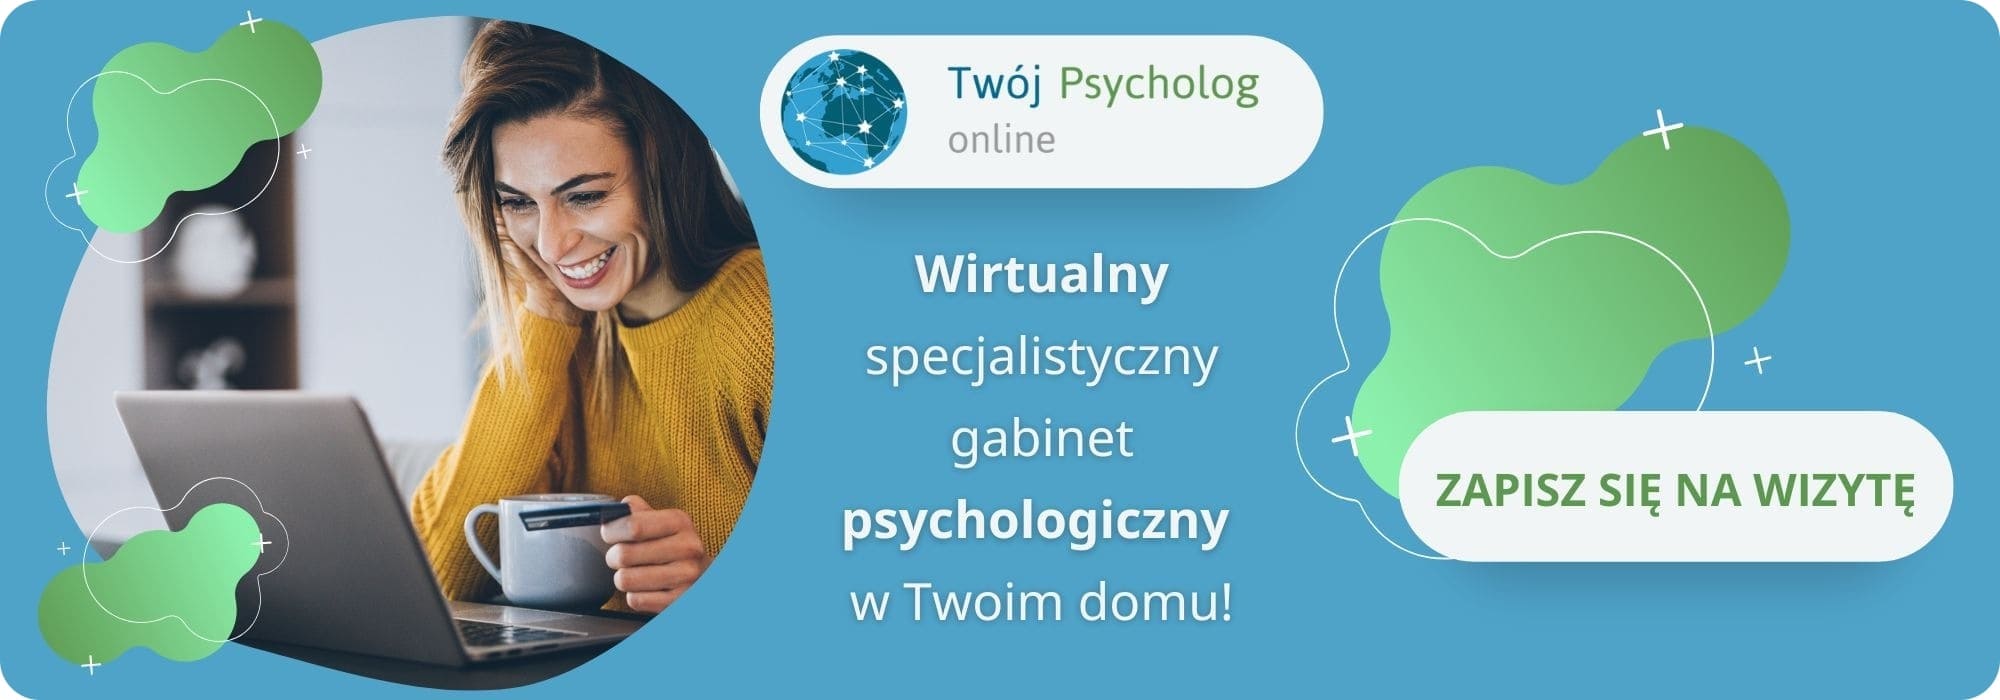 skorzystaj z pomocy psychologa online